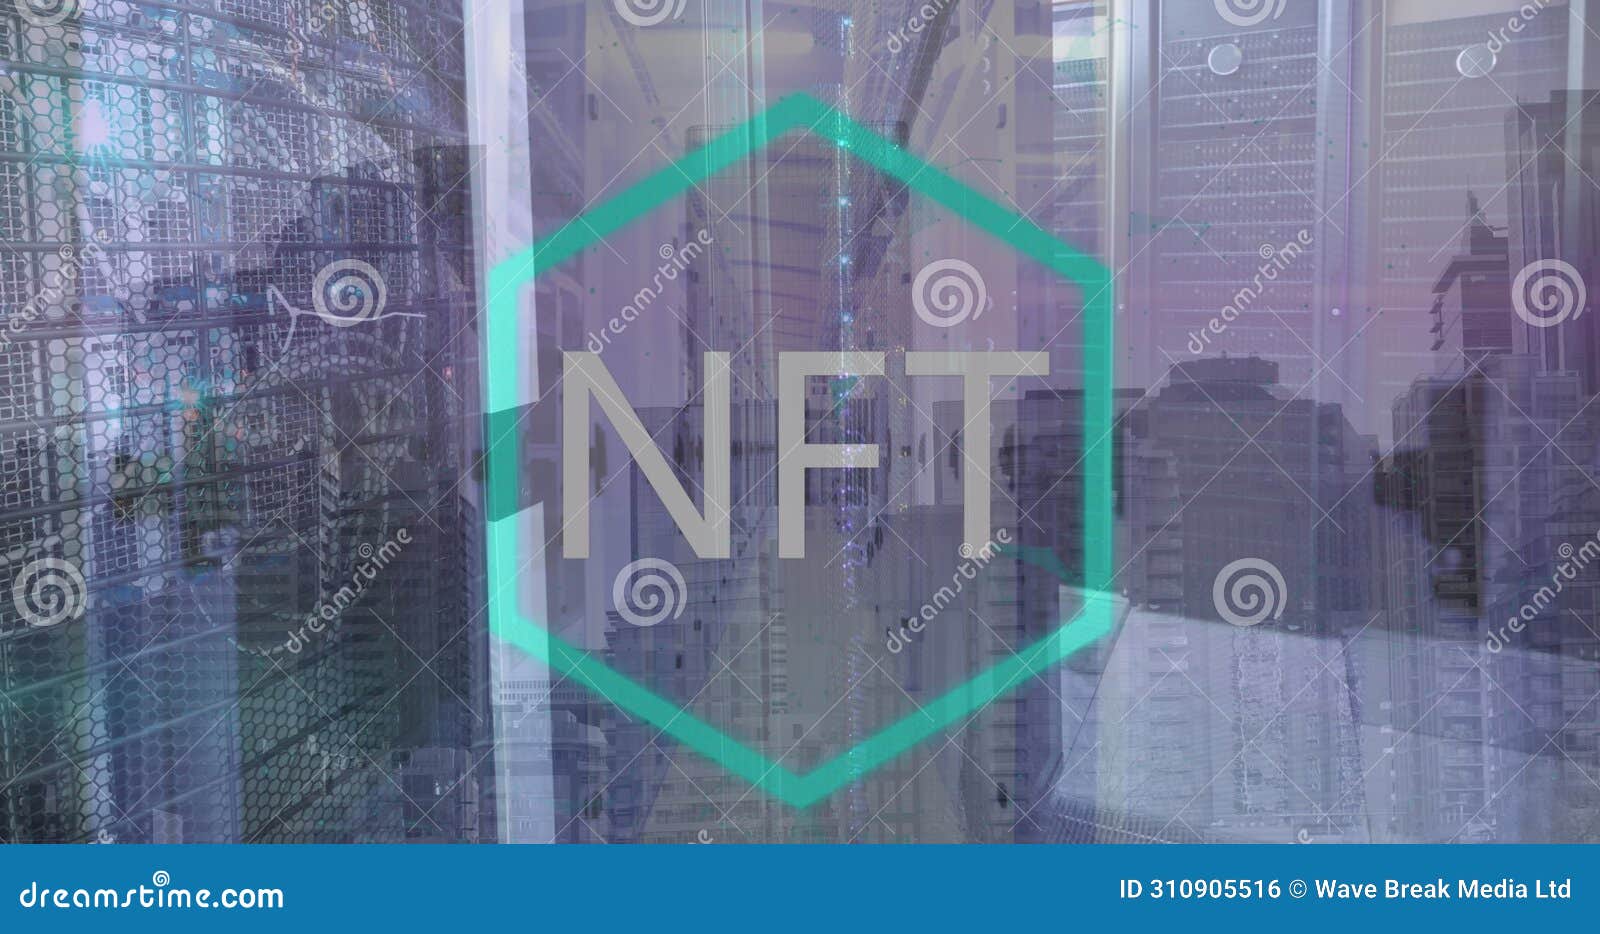 image of nft logo over computer server room